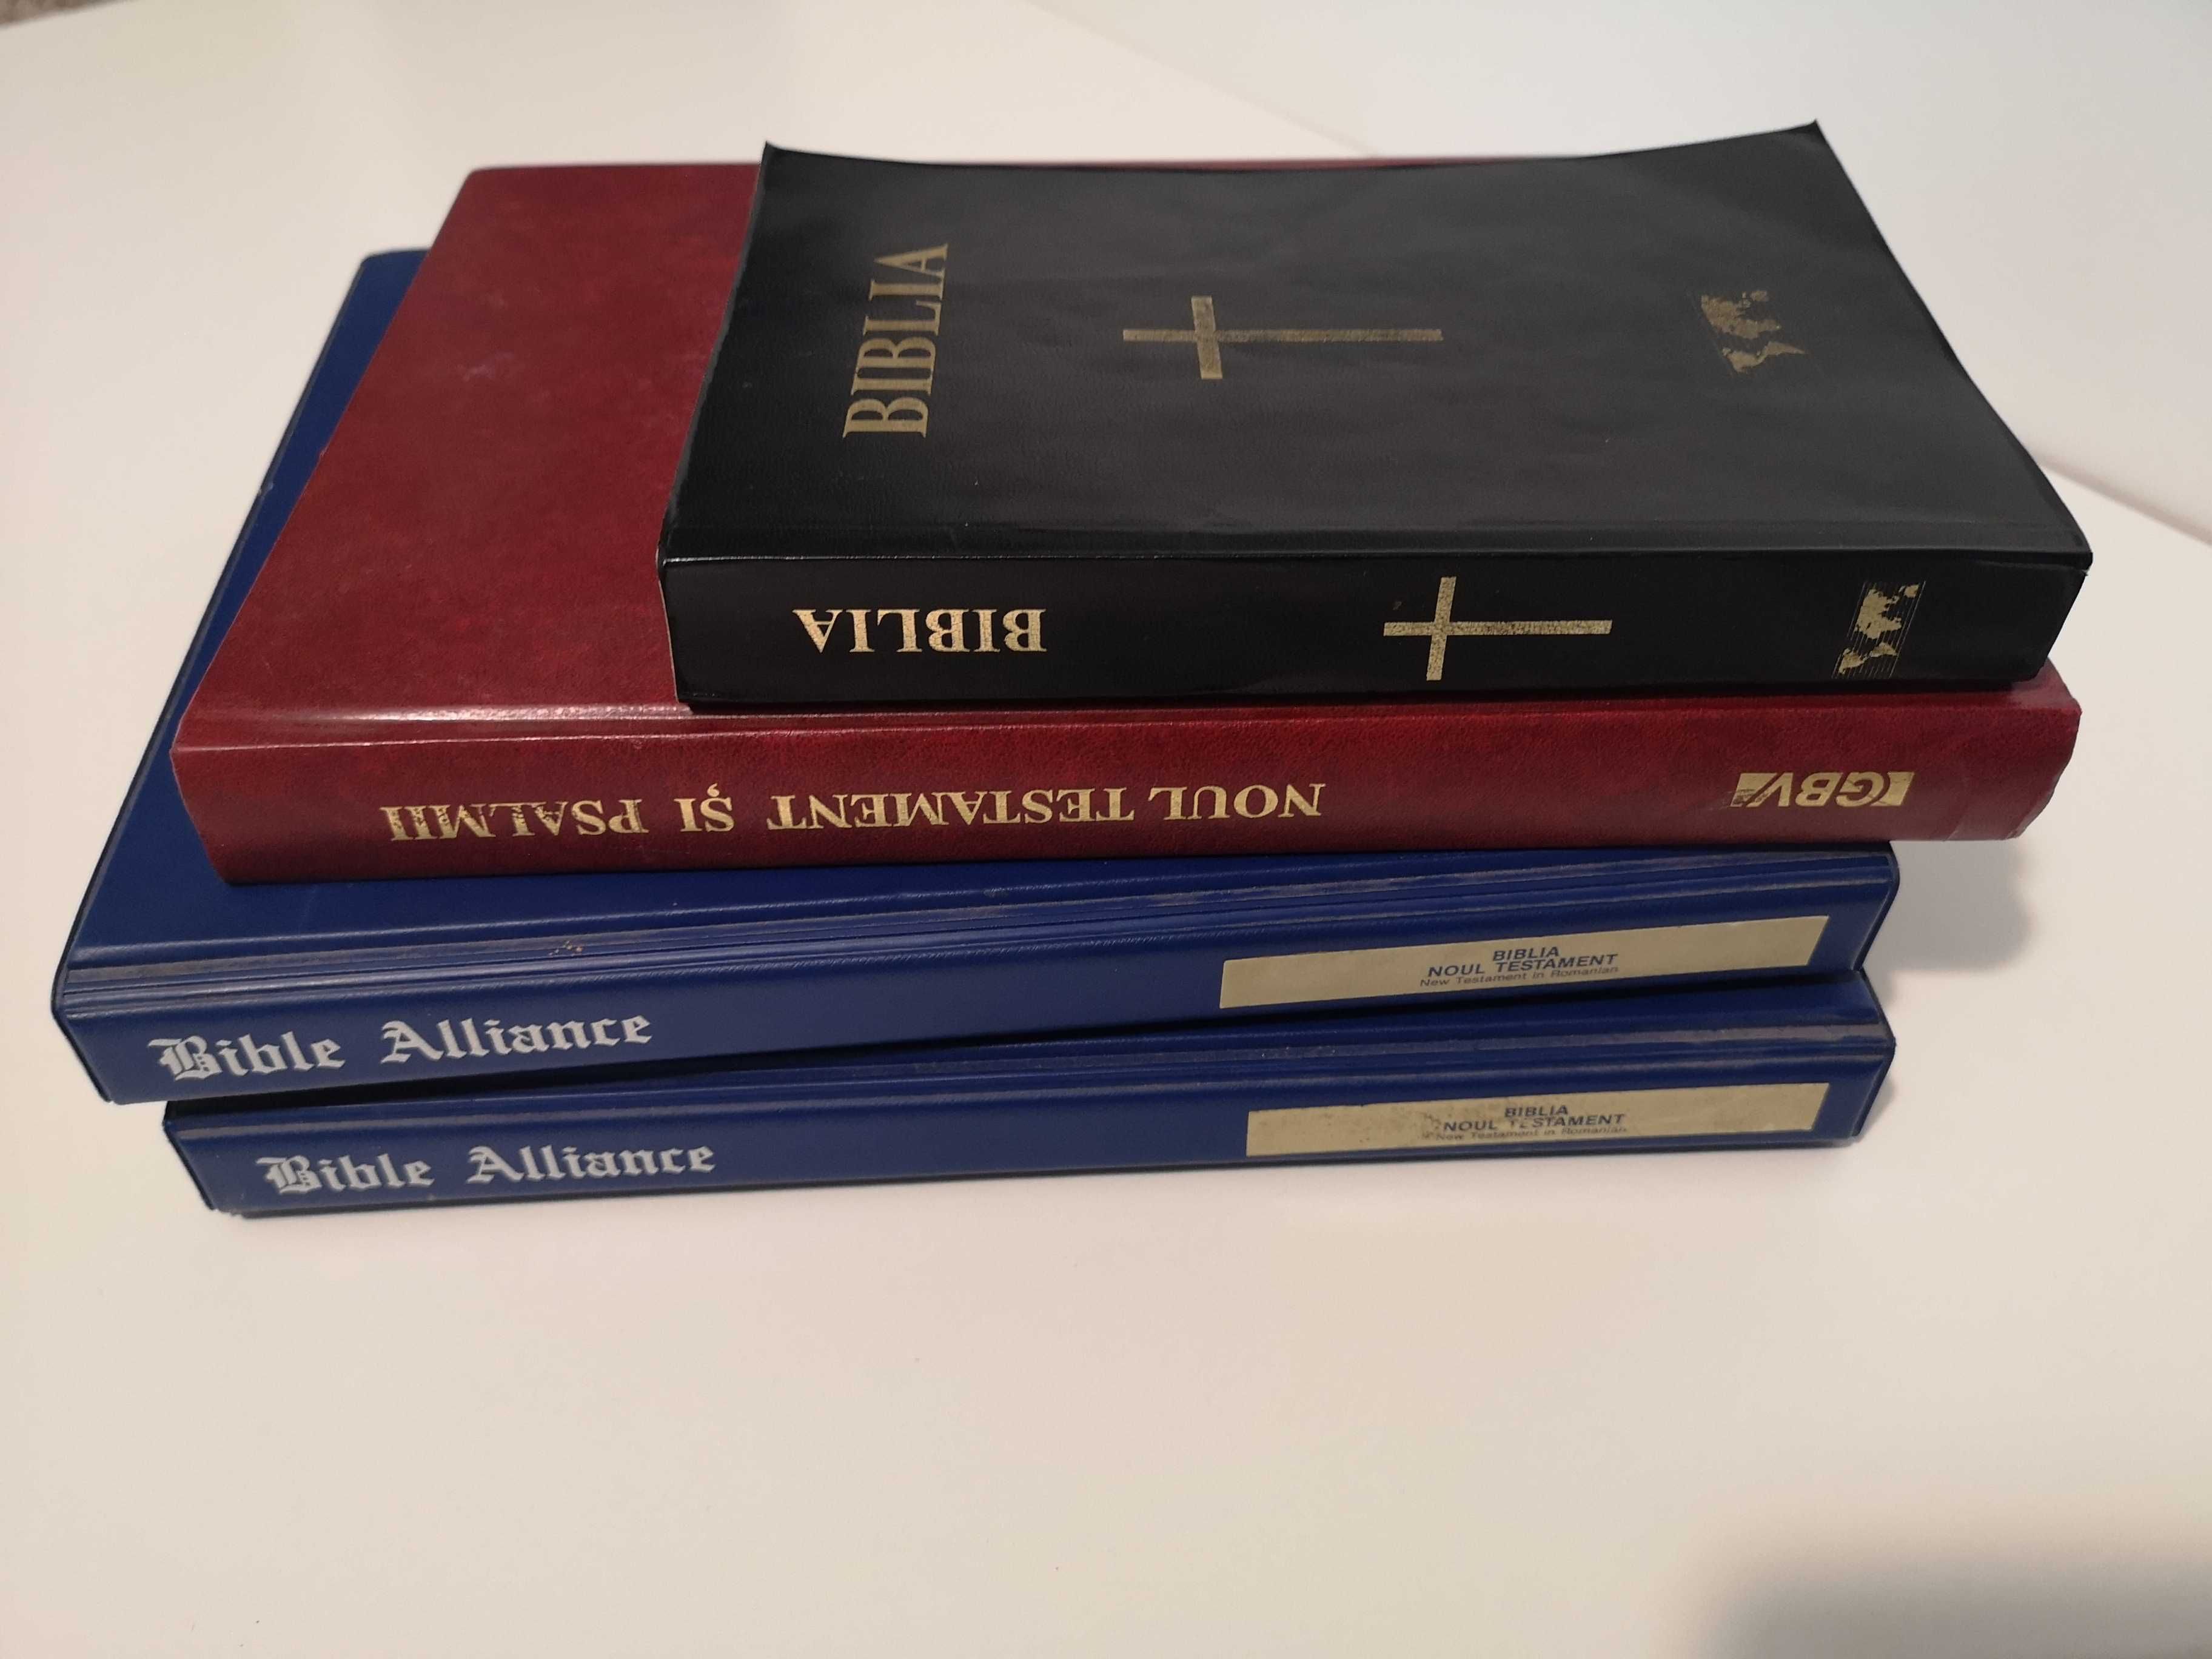 Vând pachet biblie noul testament psalmii în format audio pe casete